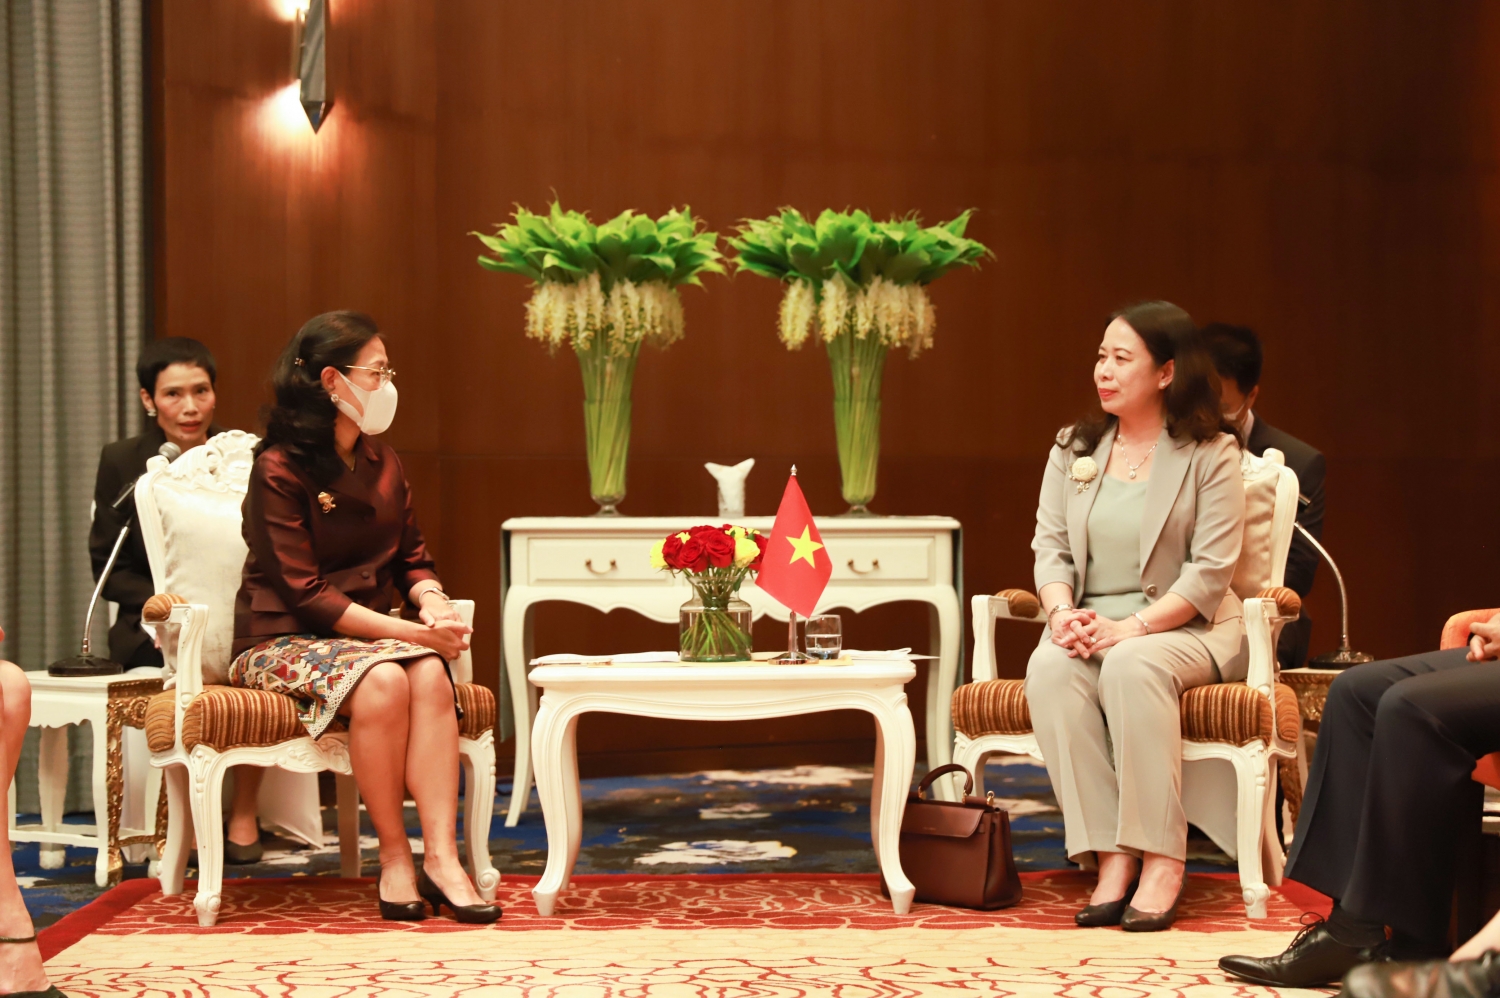 Hoạt động song phương của Phó Chủ tịch nước Võ Thị Ánh Xuân tại Hội nghị Thượng đỉnh Phụ nữ toàn cầu